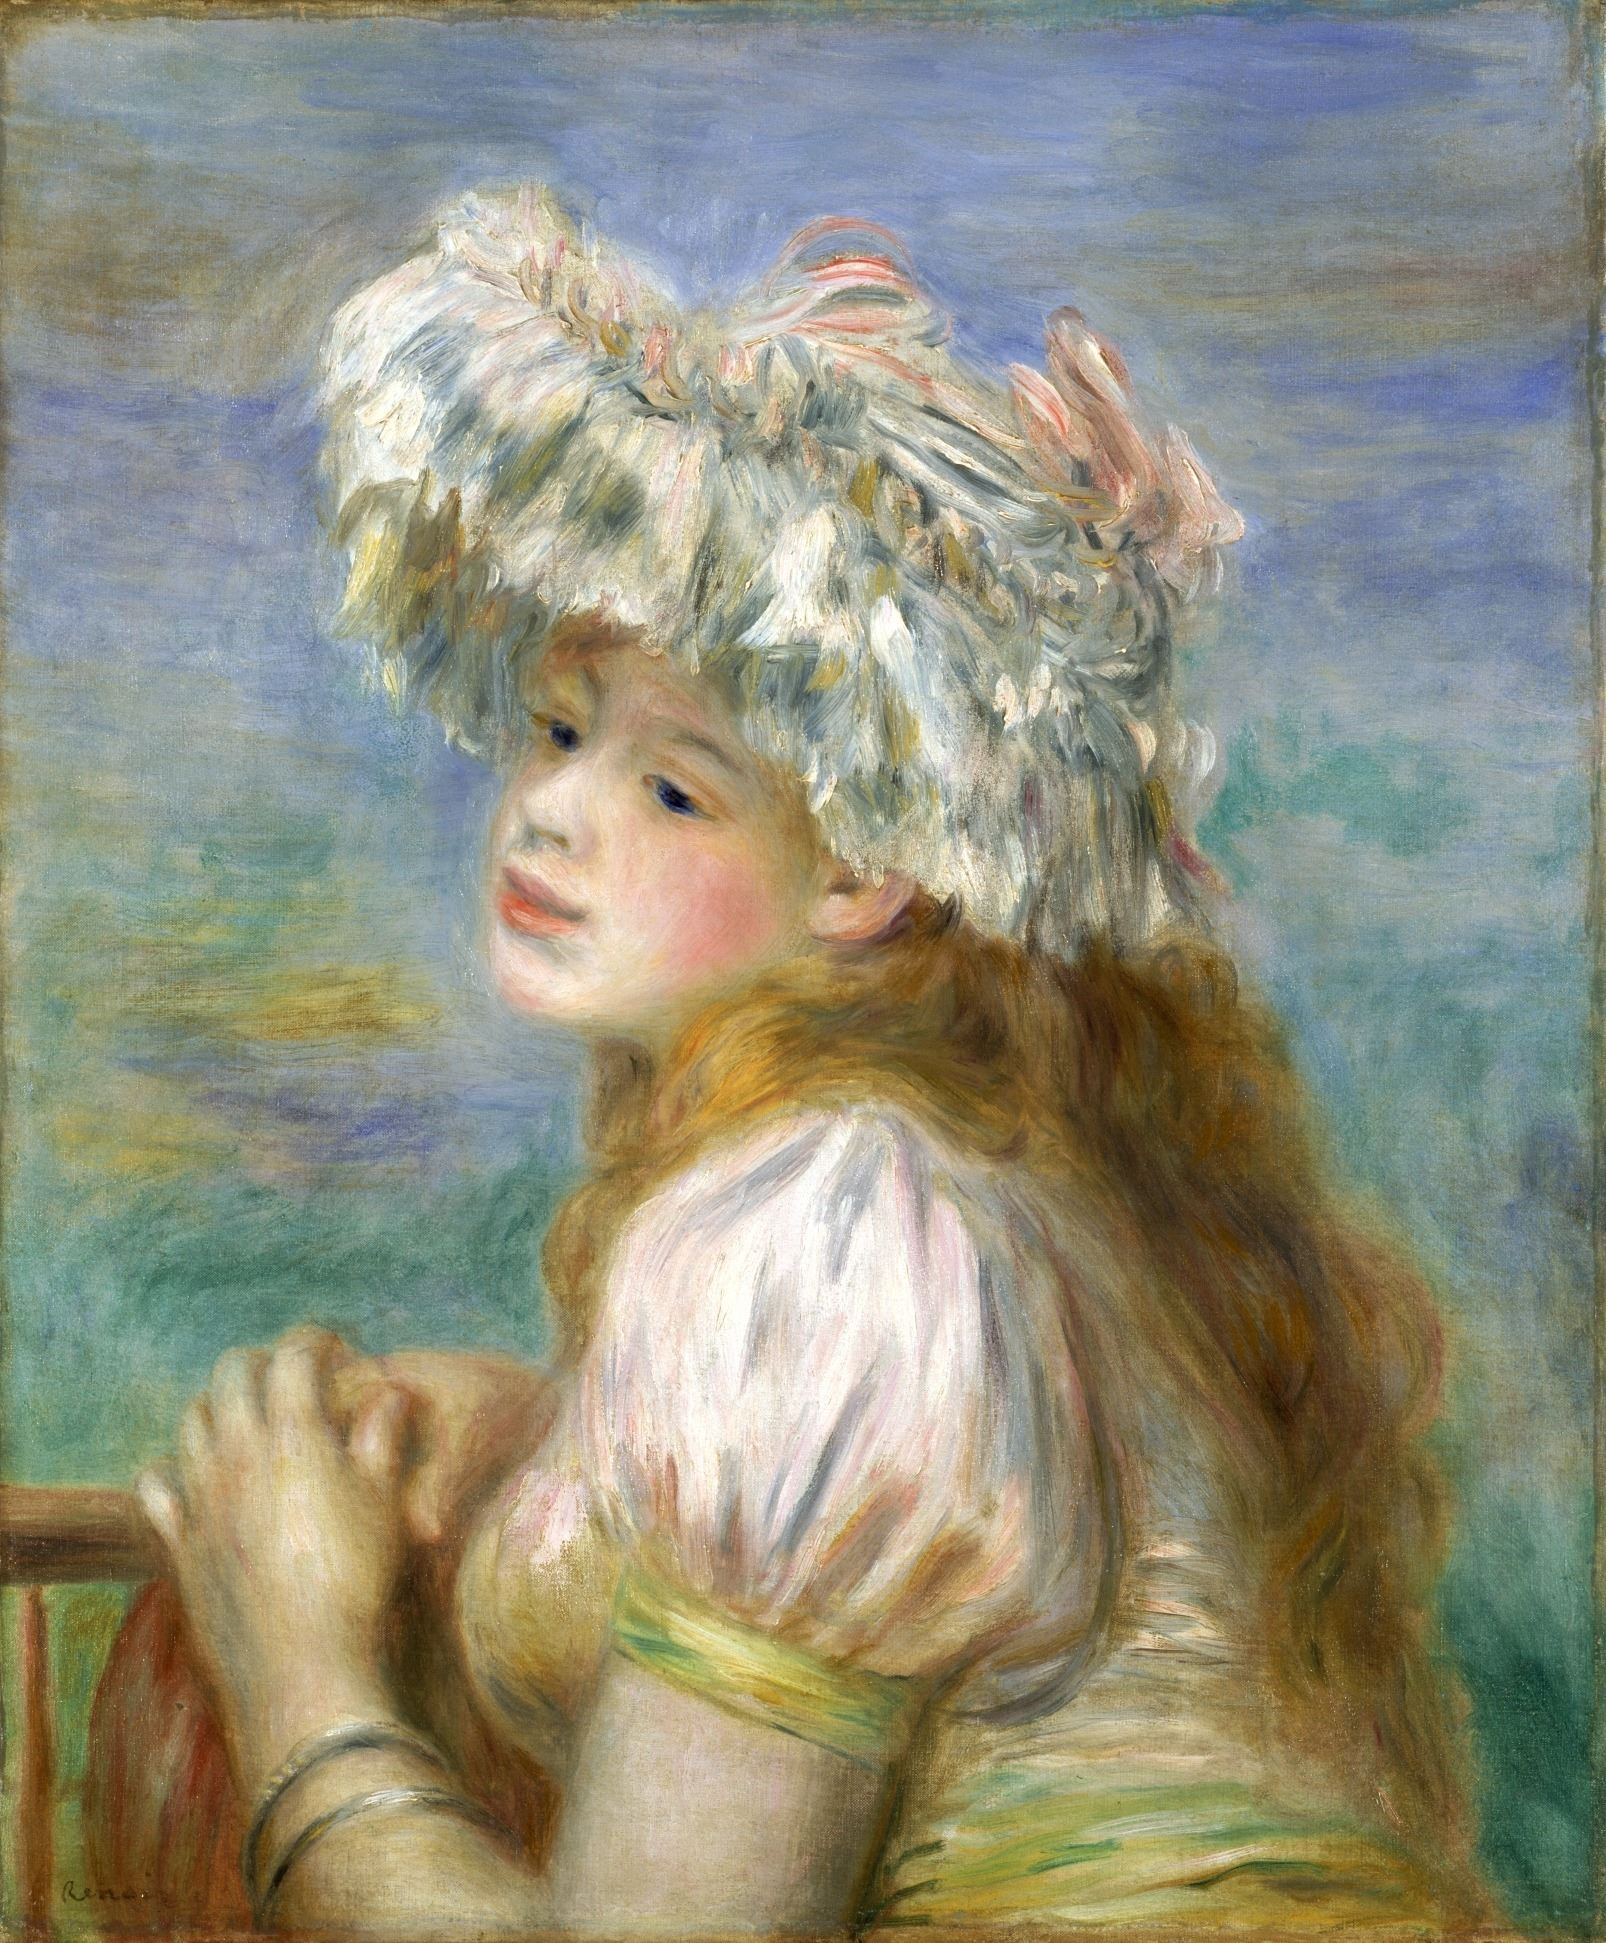 ピエール・オーギュスト・ルノワール≪レースの帽子の少女≫1891年